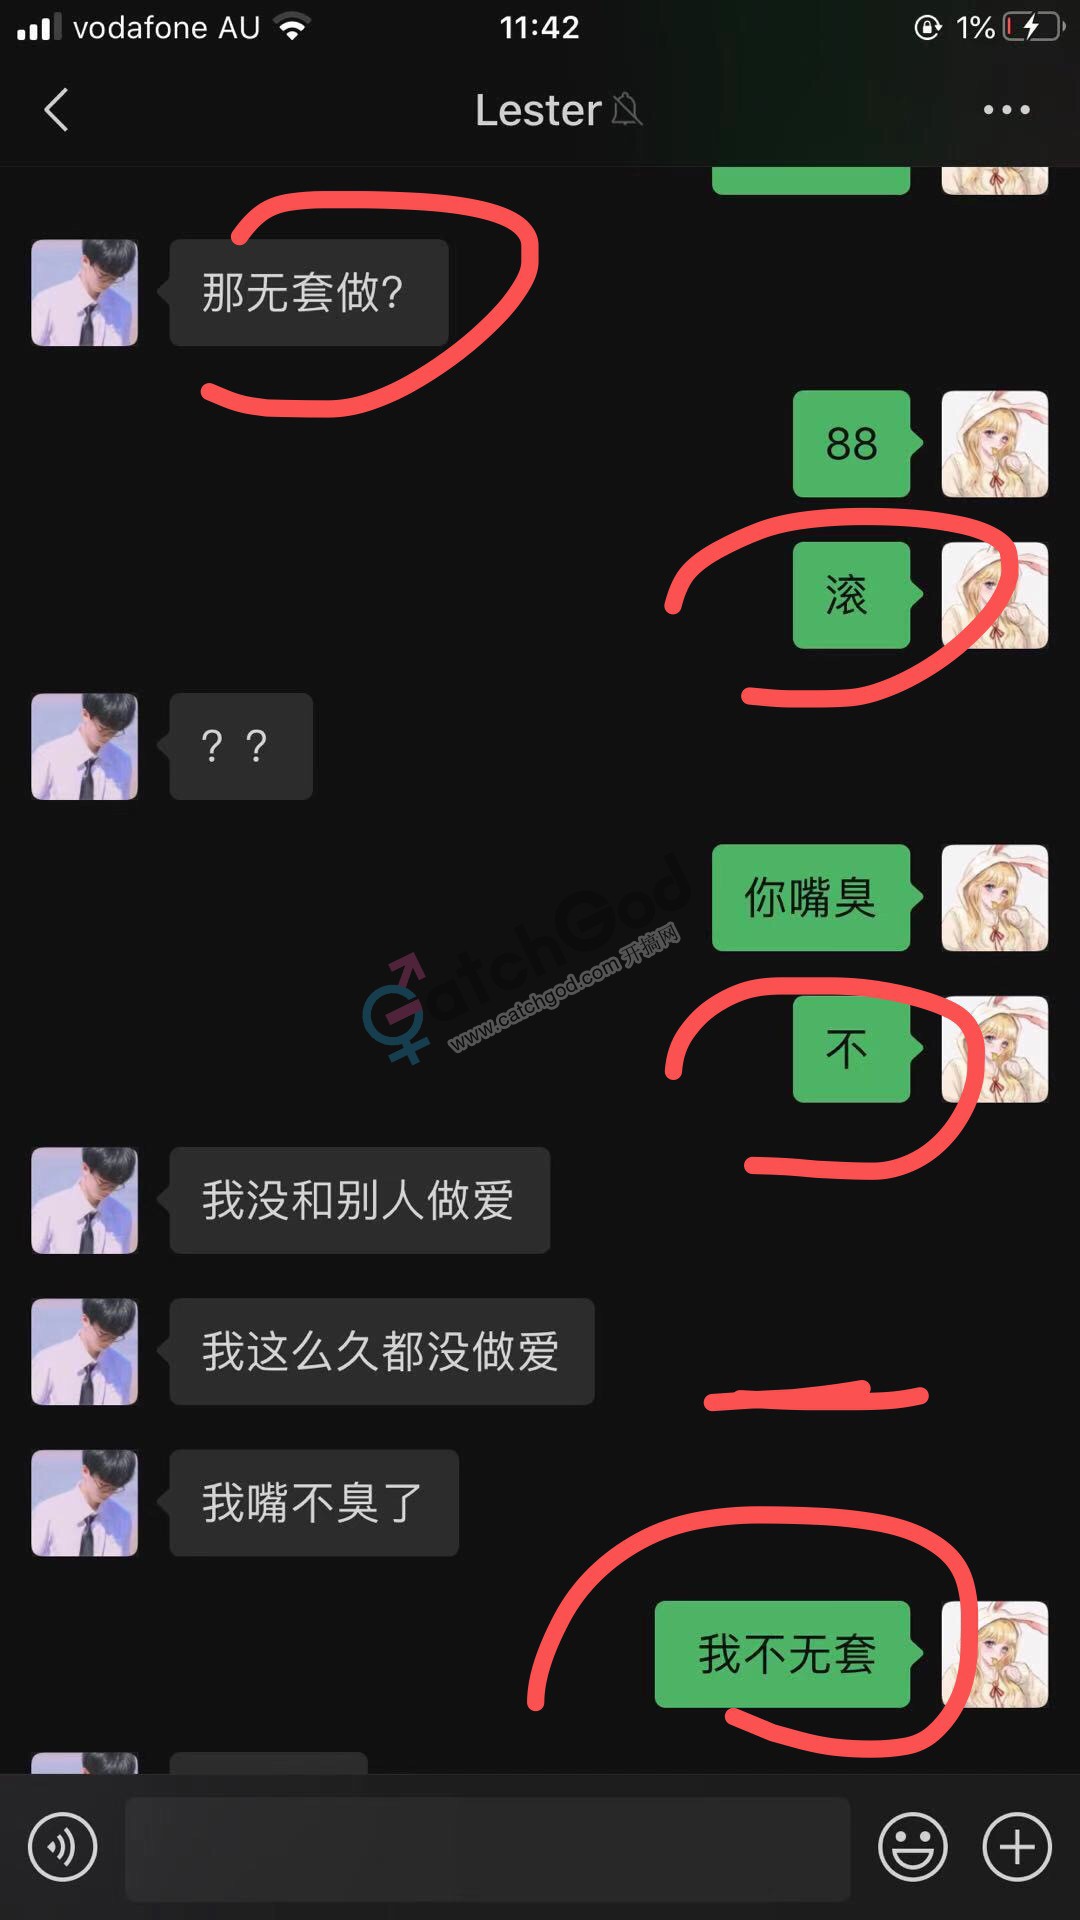 WeChat Image_20201123110932.jpg